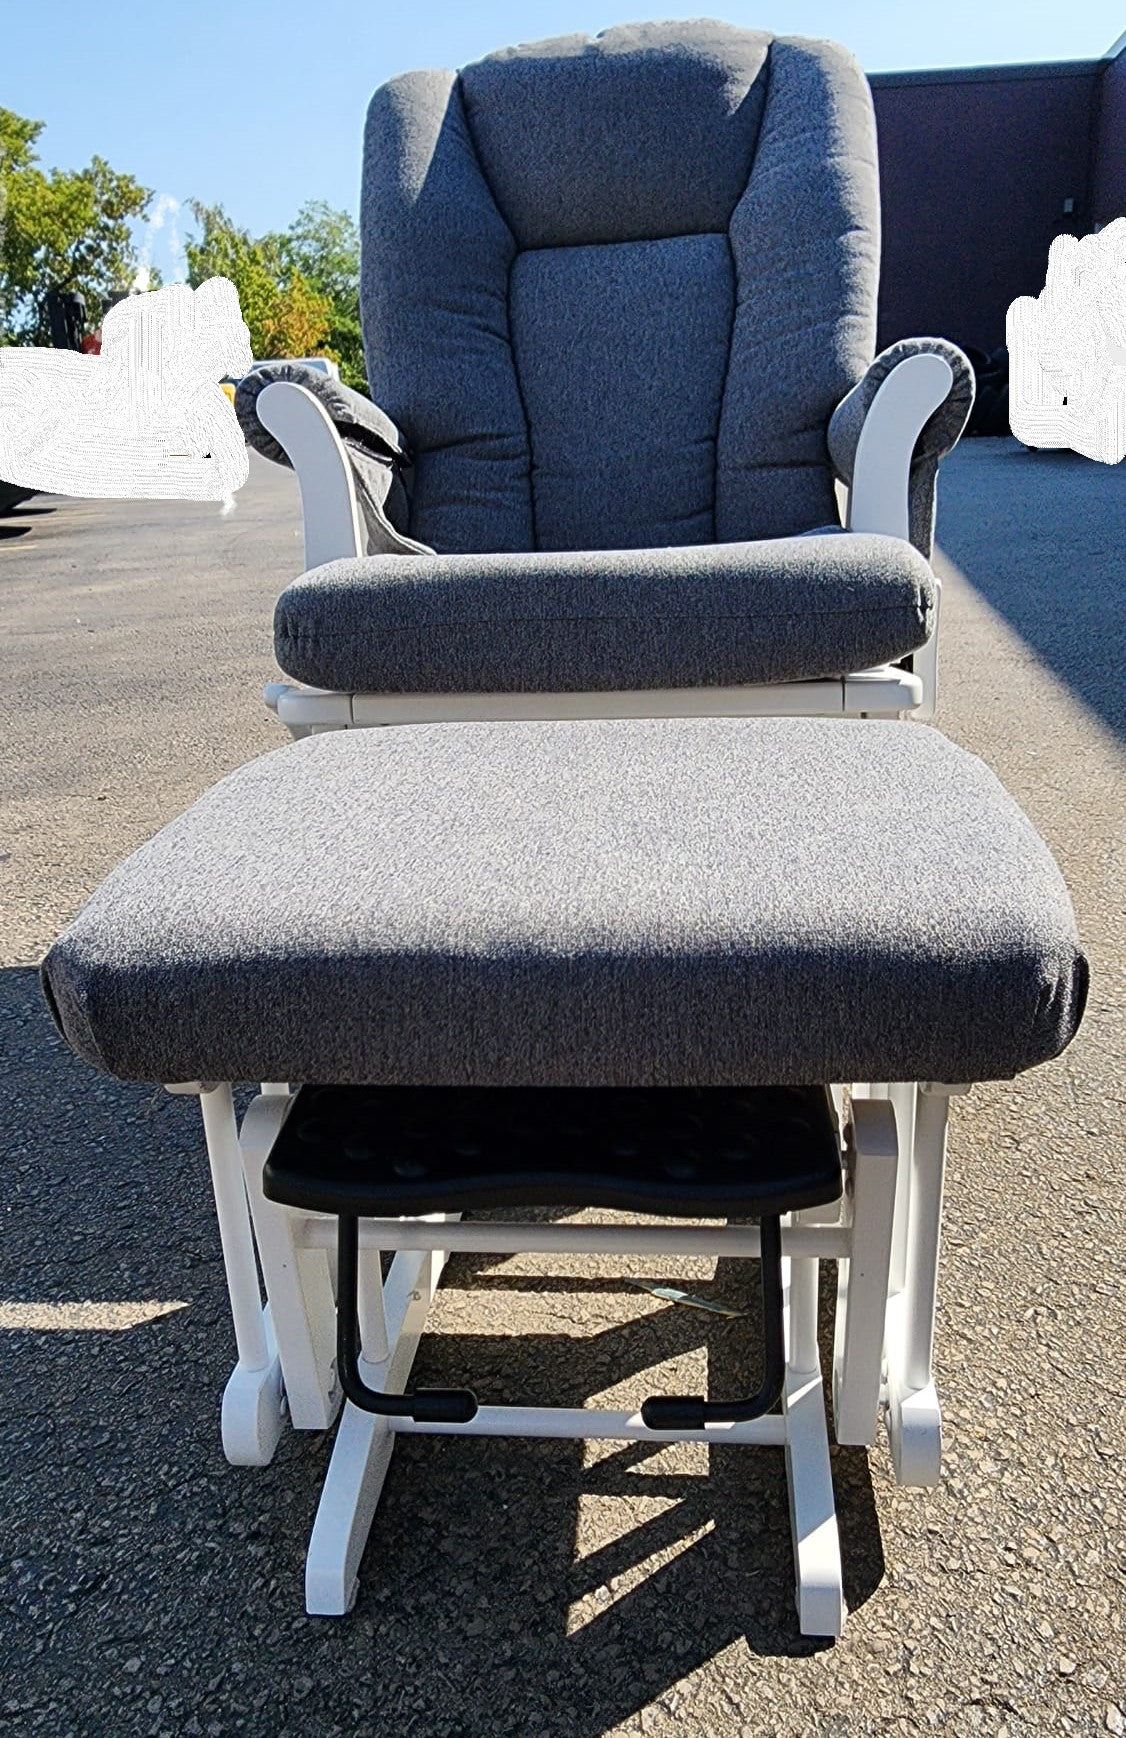 DUTALIER ANNA RECLINER/GL Baby Rocking chair white